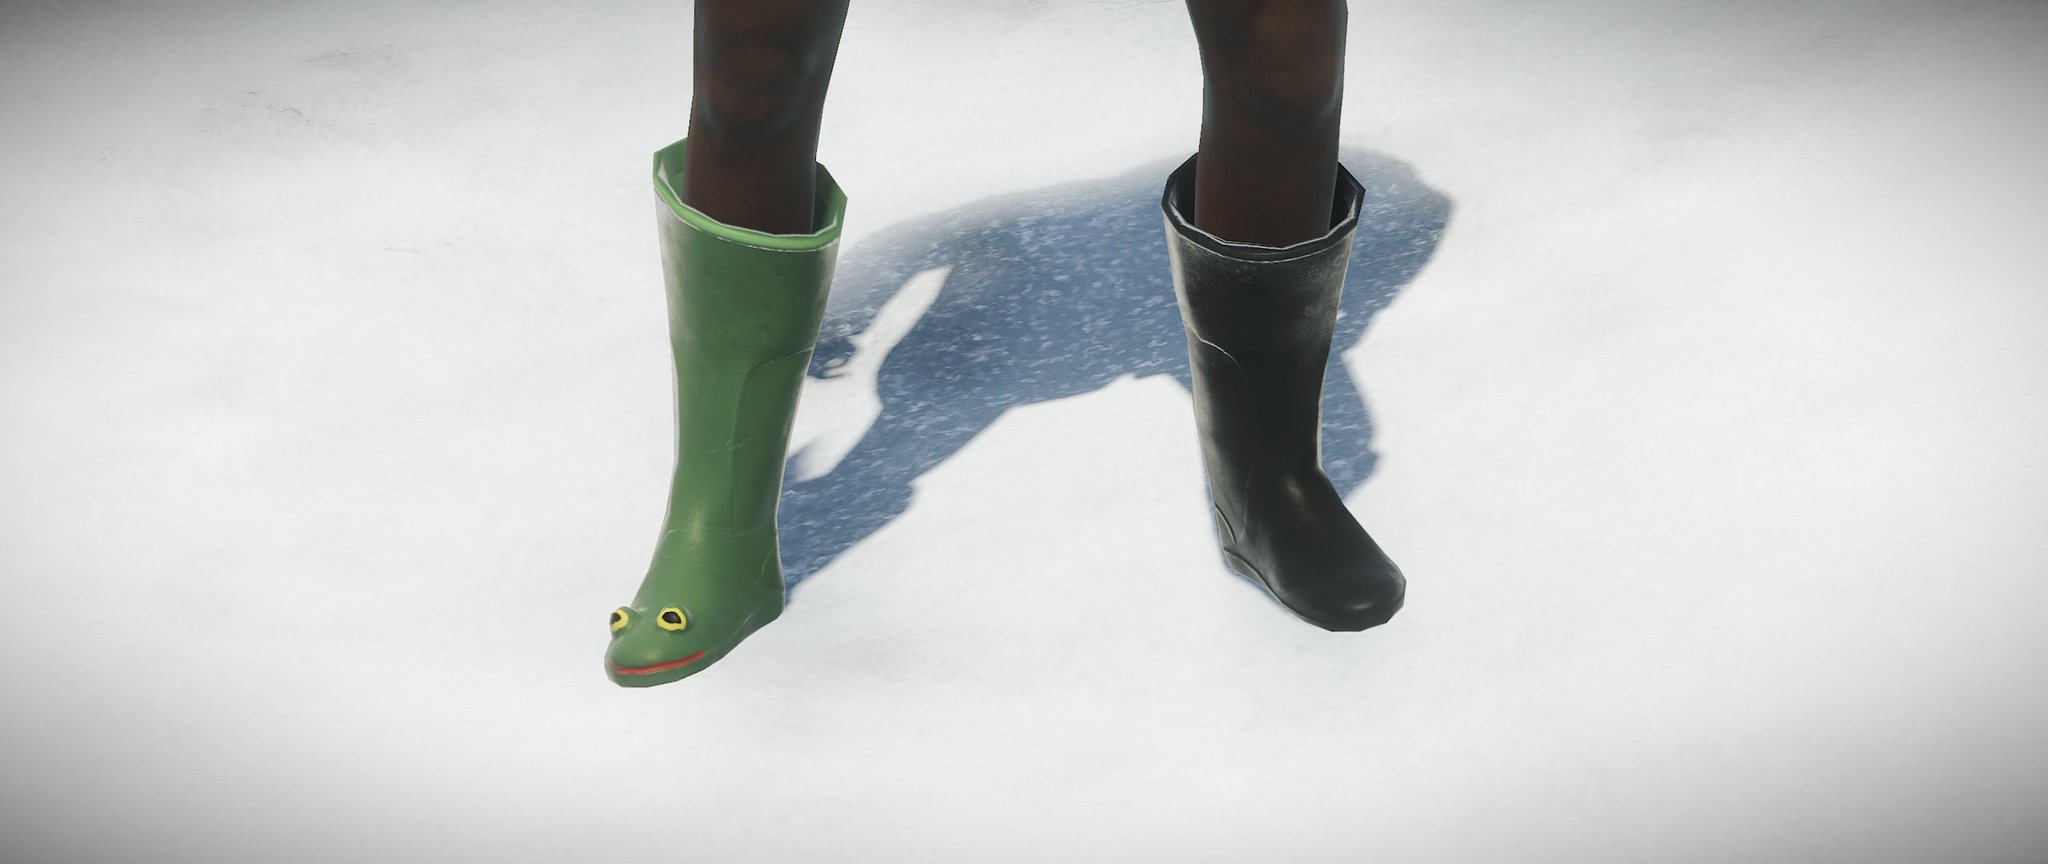 Frog boots rust как получить фото 3